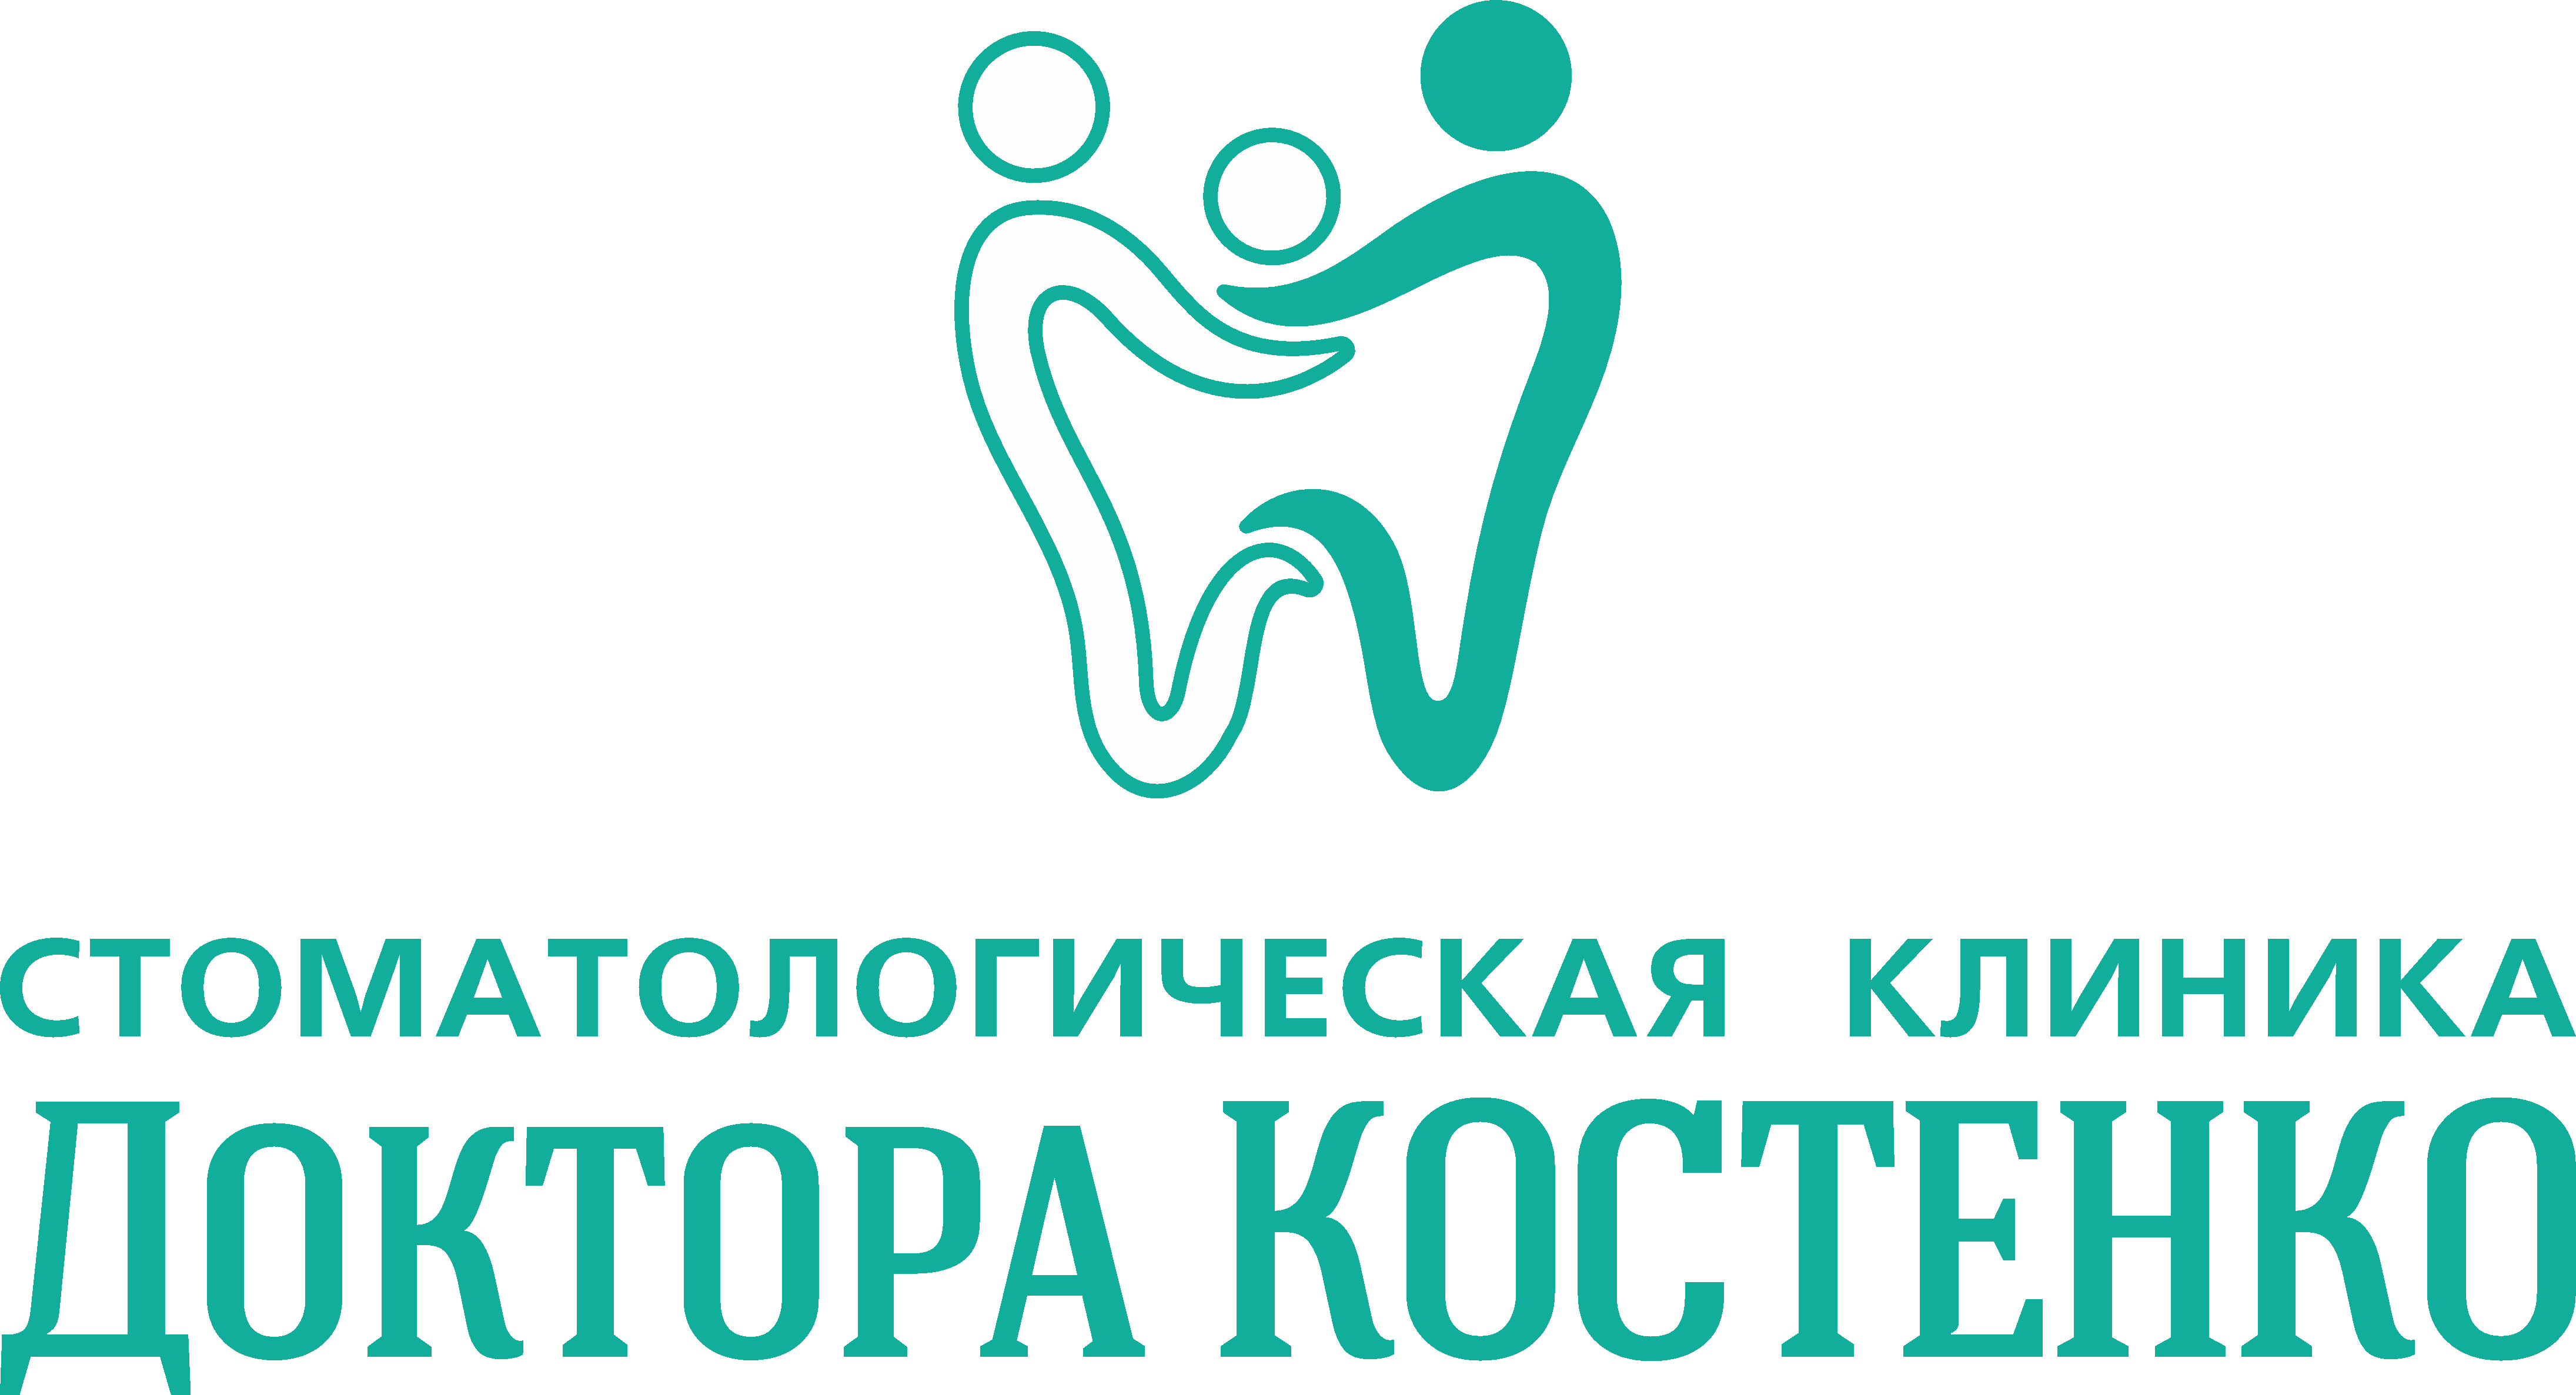 Стоматология доктора Костенко